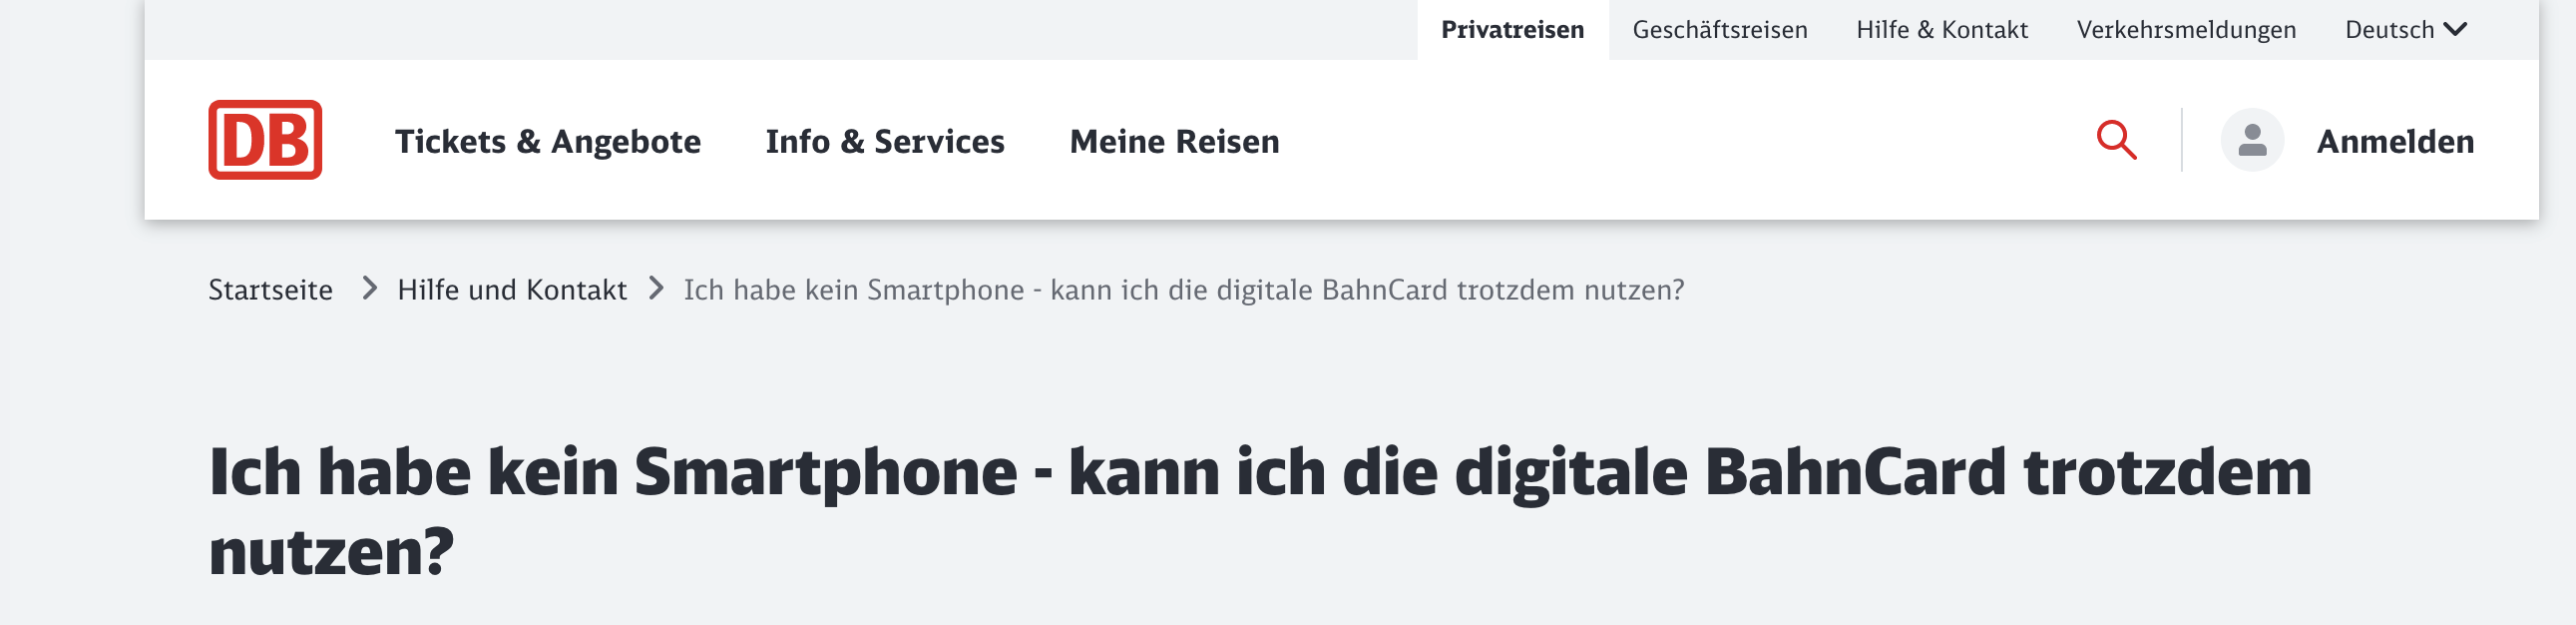 Screenshot mit der Frage "Ich habe kein Smartphone - kann ich die digitale BahnCard trotzdem nutzen?